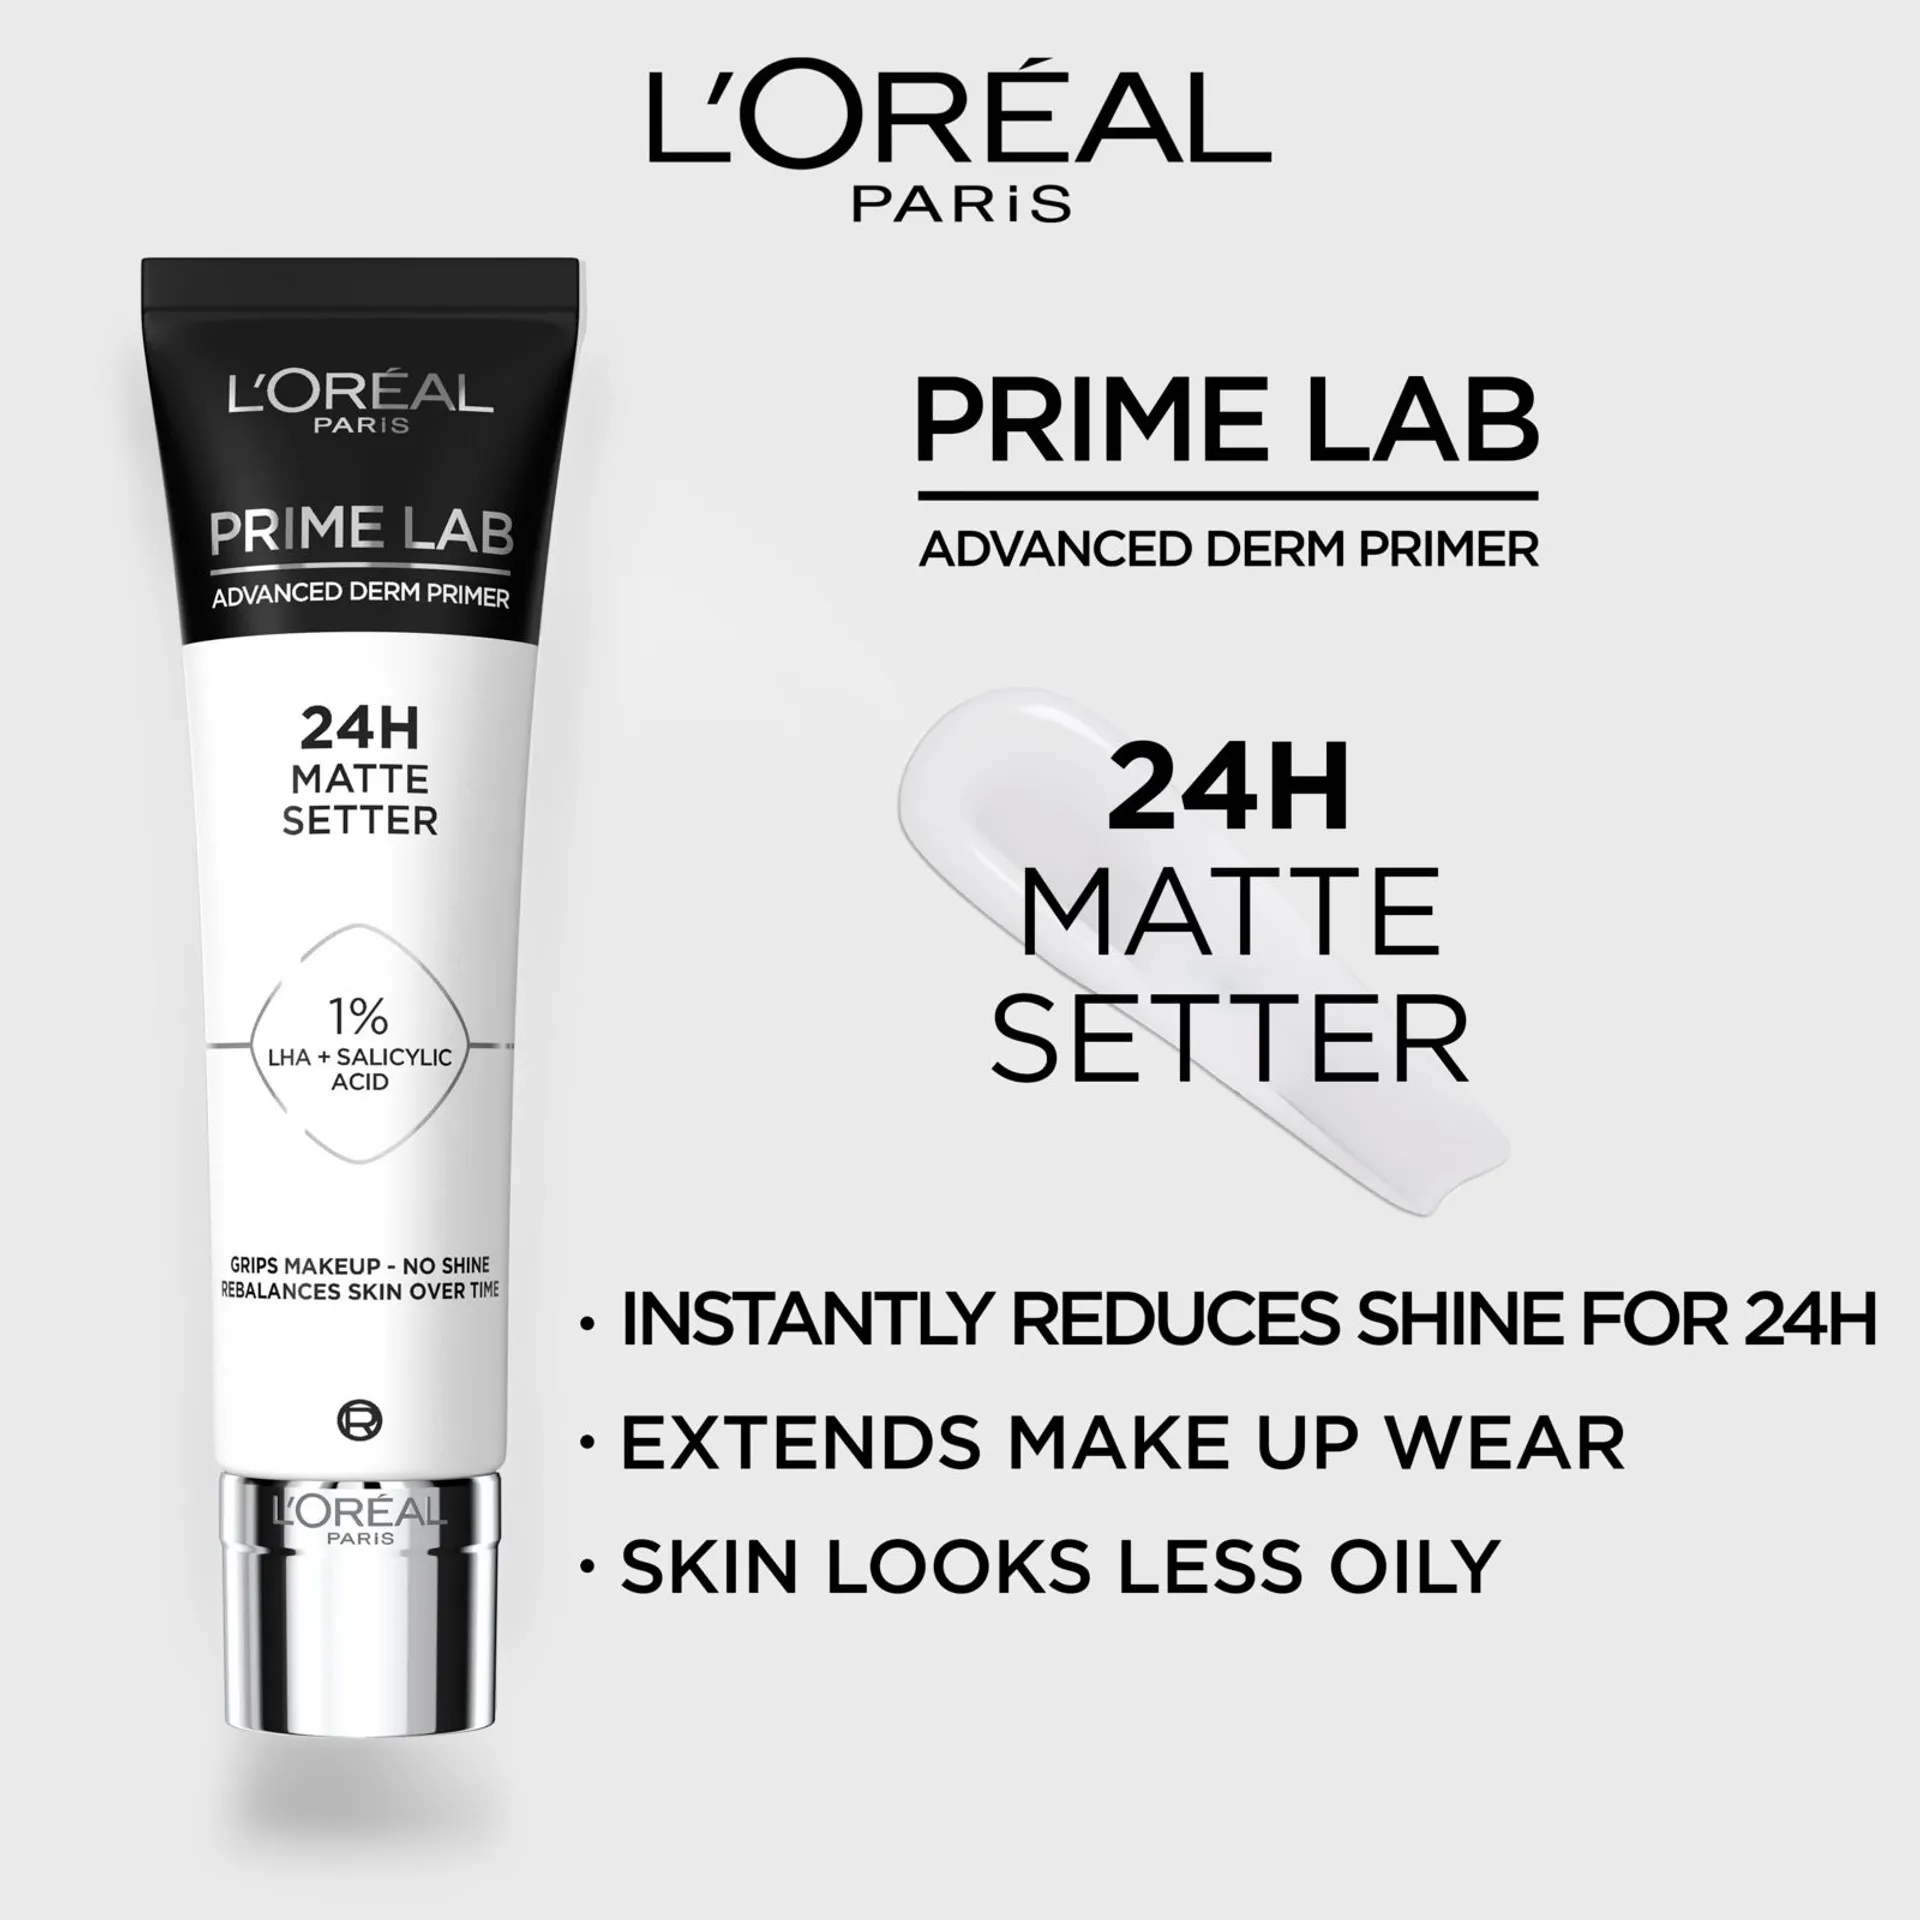 L'Oréal Paris Prime Lab Advanced Derm Primer 24H Matte Setter pohjustusvoide 30ml - 3